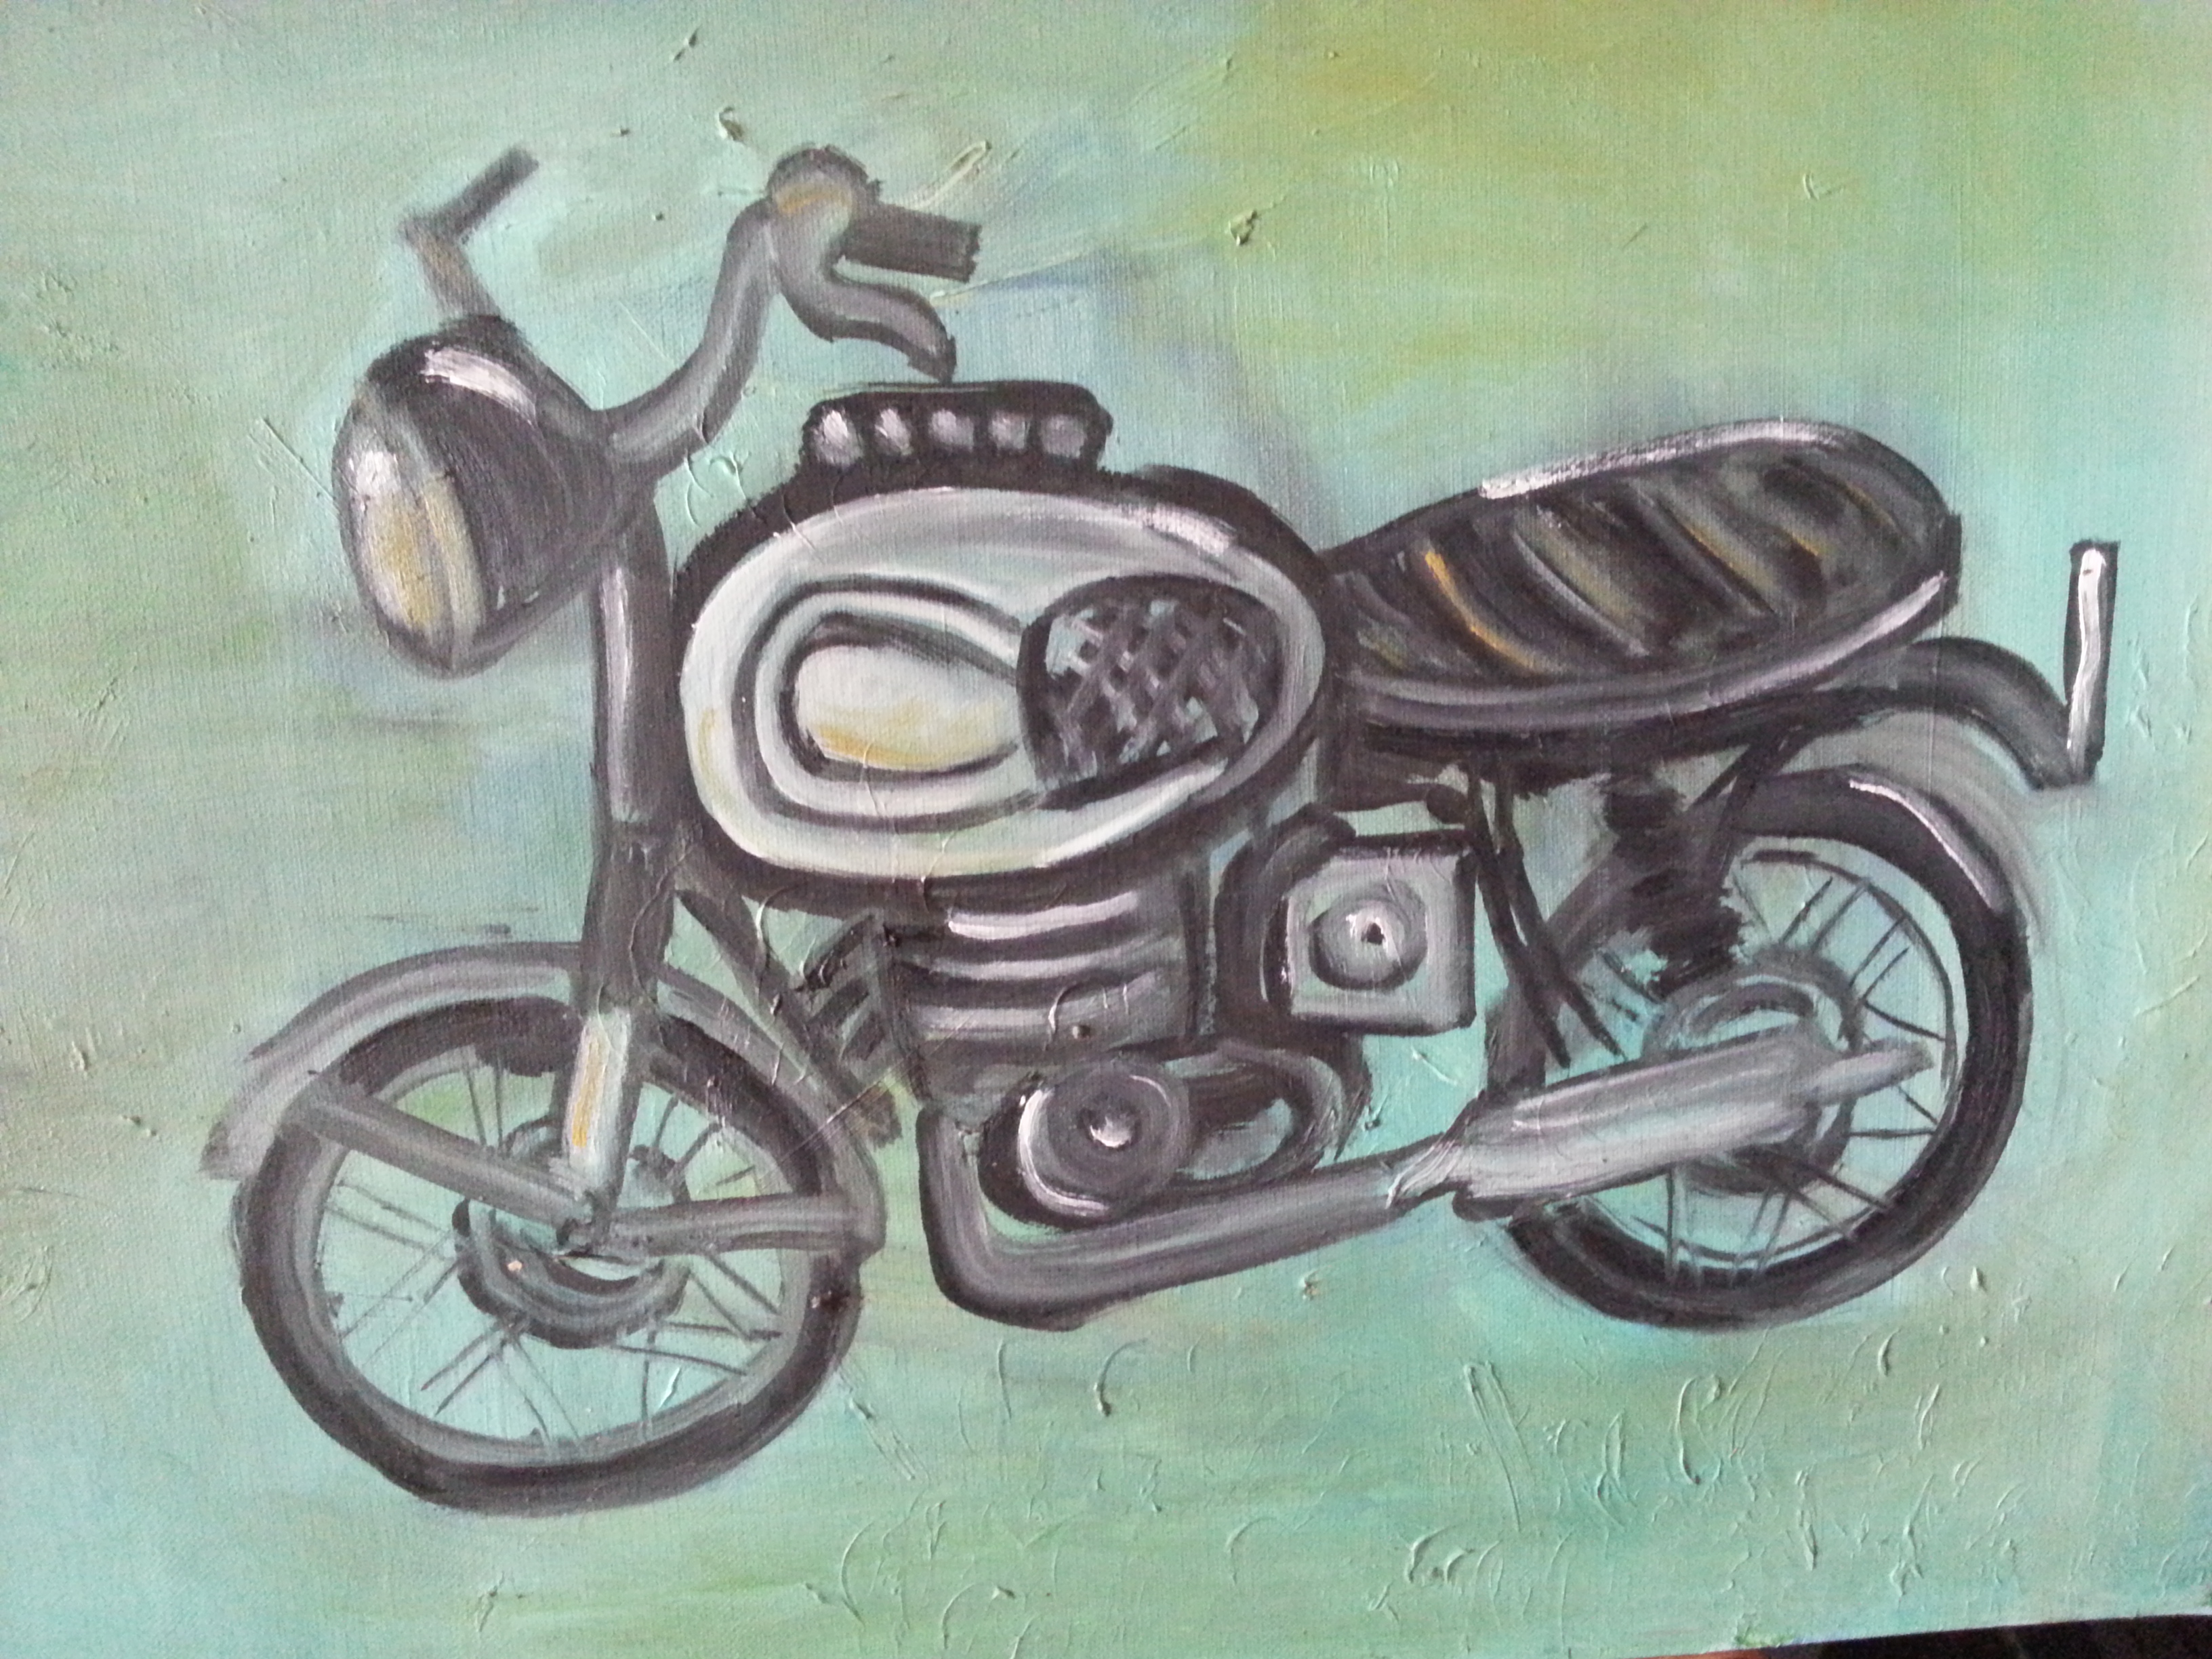 Peinture de l'artiste peintre Adèle liva, le titre de l'oeuvre est : Biker passion